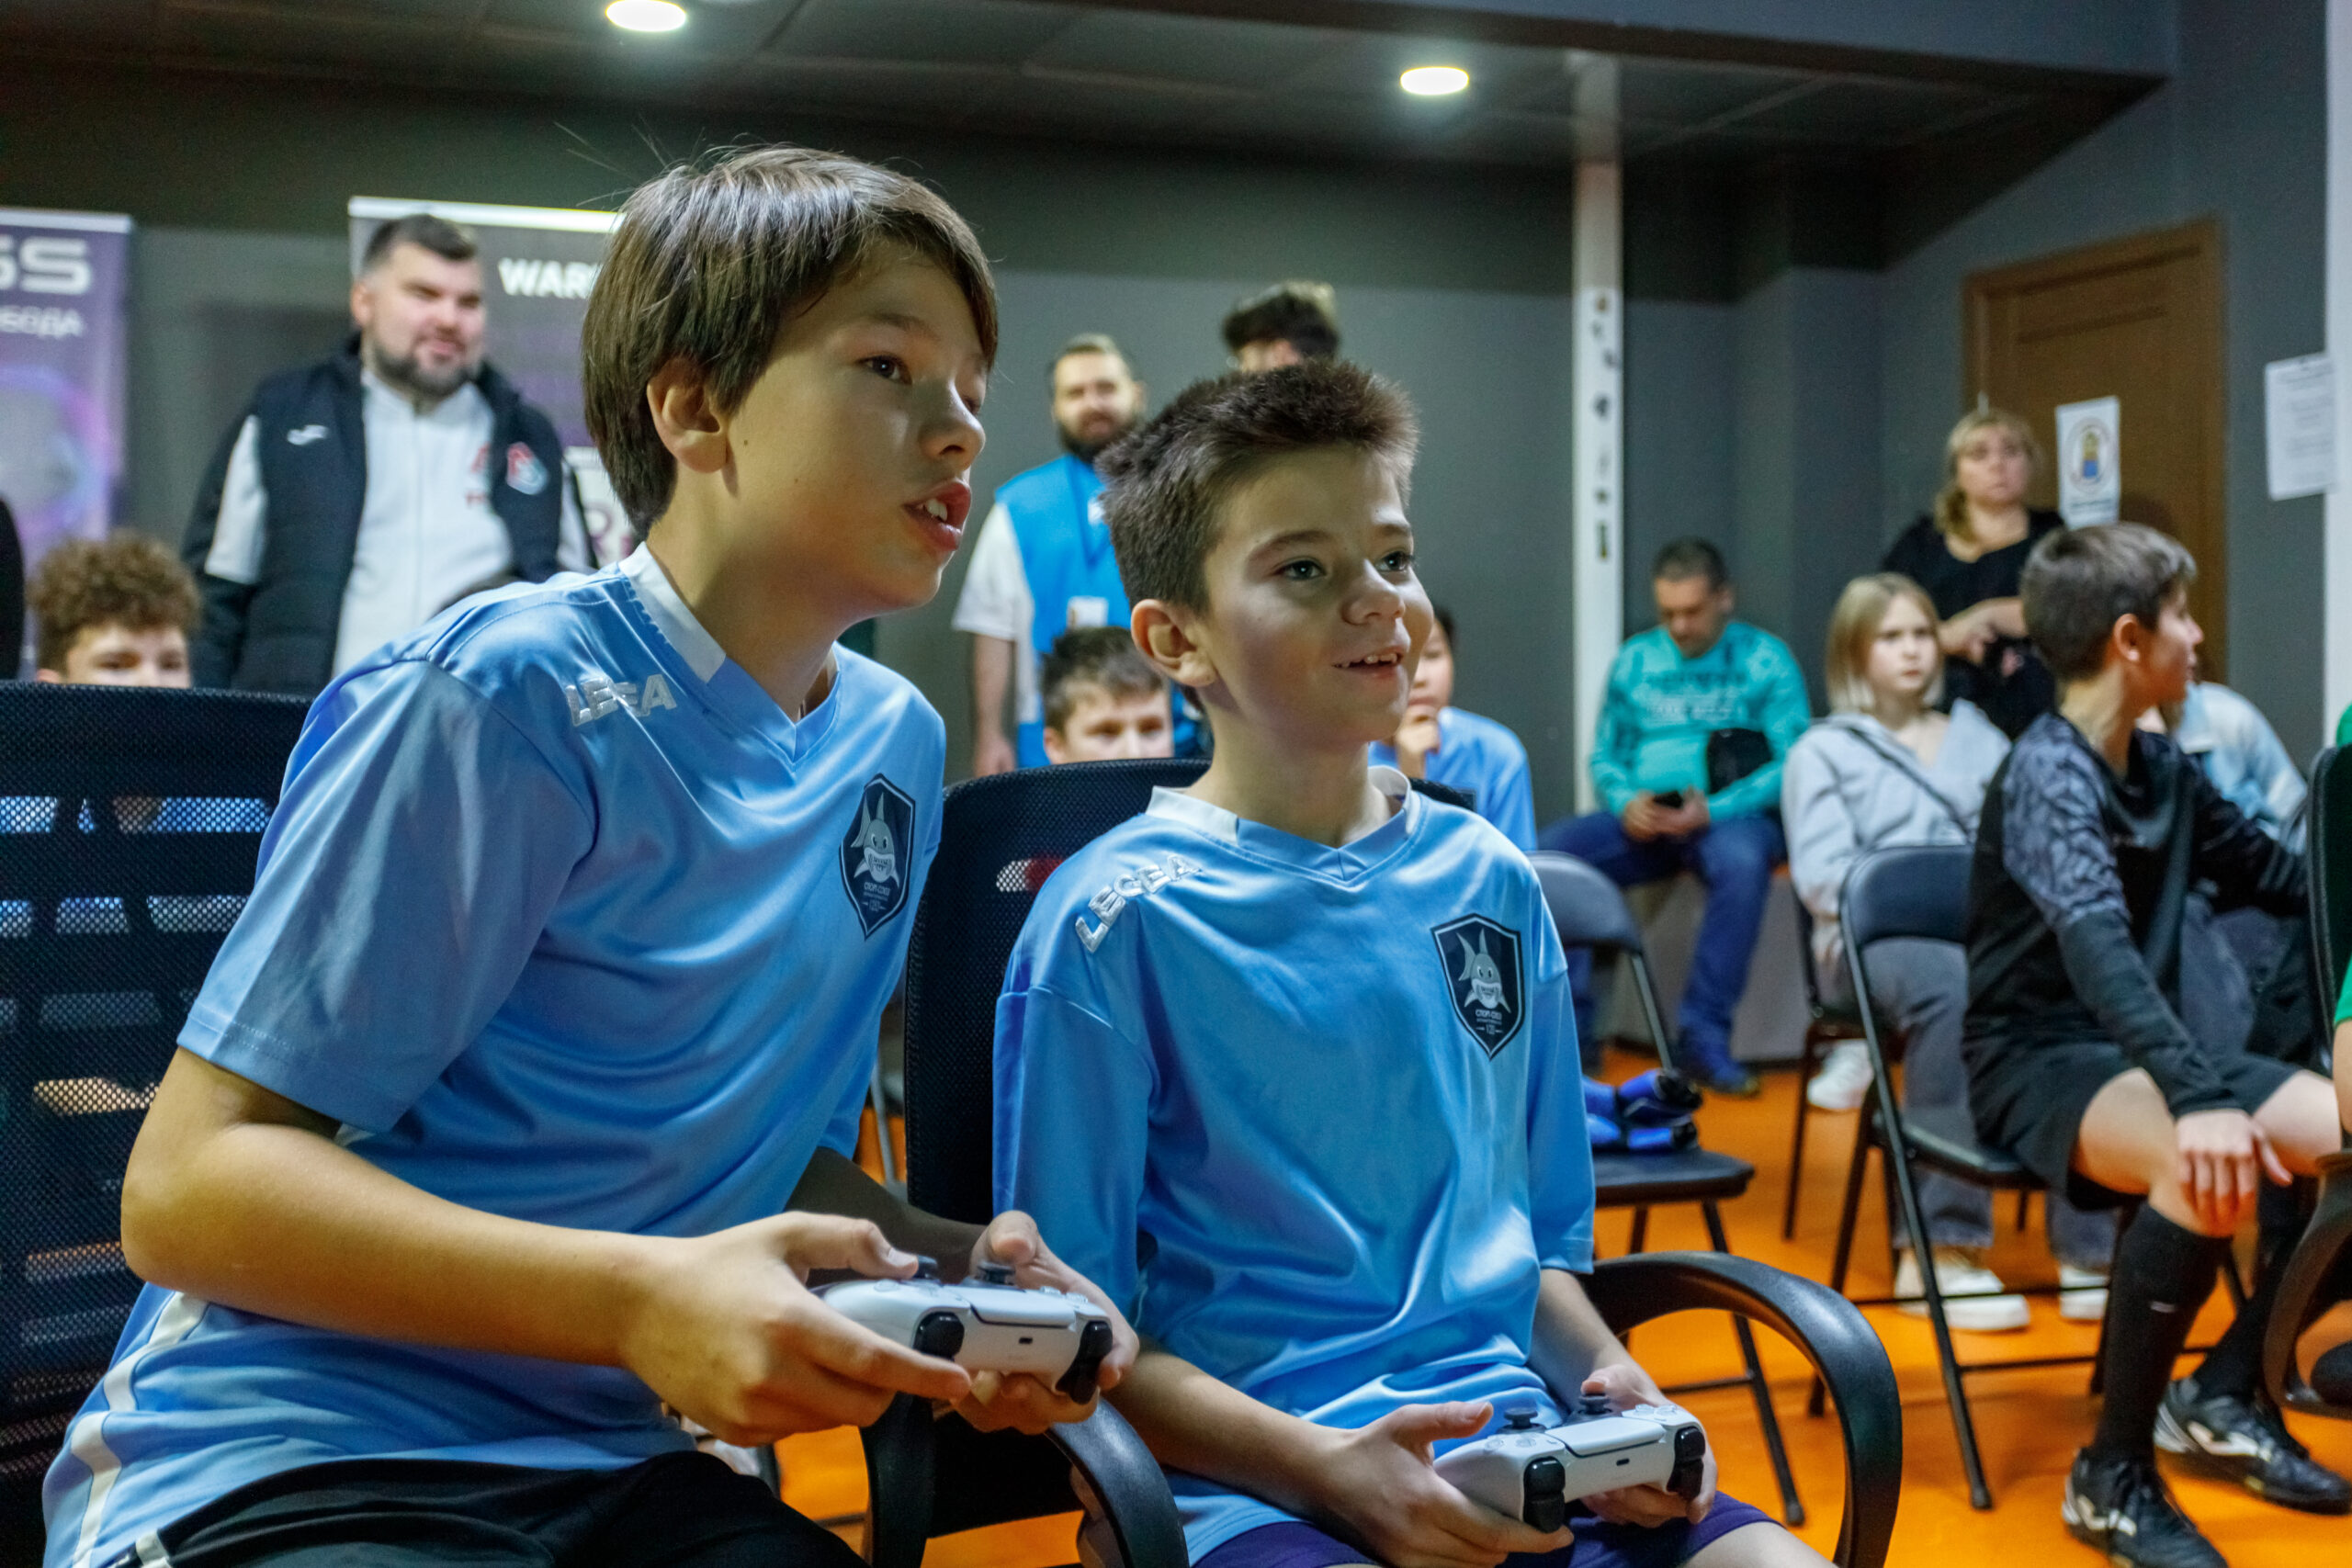 Столичное образование и футбольный клуб «Локомотив» запустили фиджитал-лигу для школьников